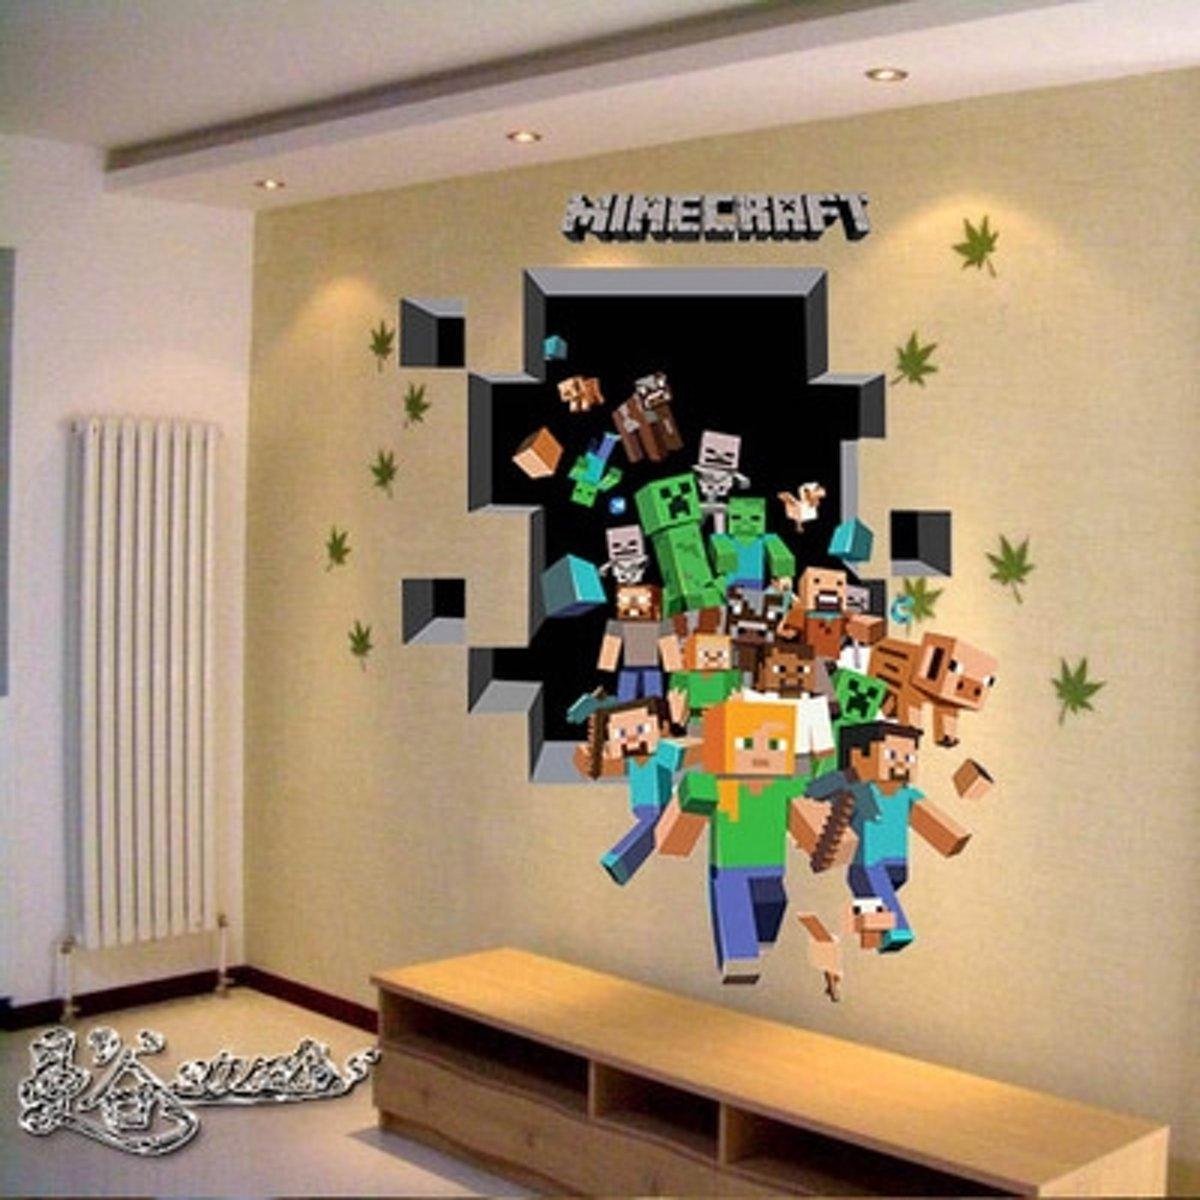 3D Plak Poster XL Versie - Gebaseerd op Minecraft Spel - Muursticker Game Personage's uit Minecraft - Merkloos